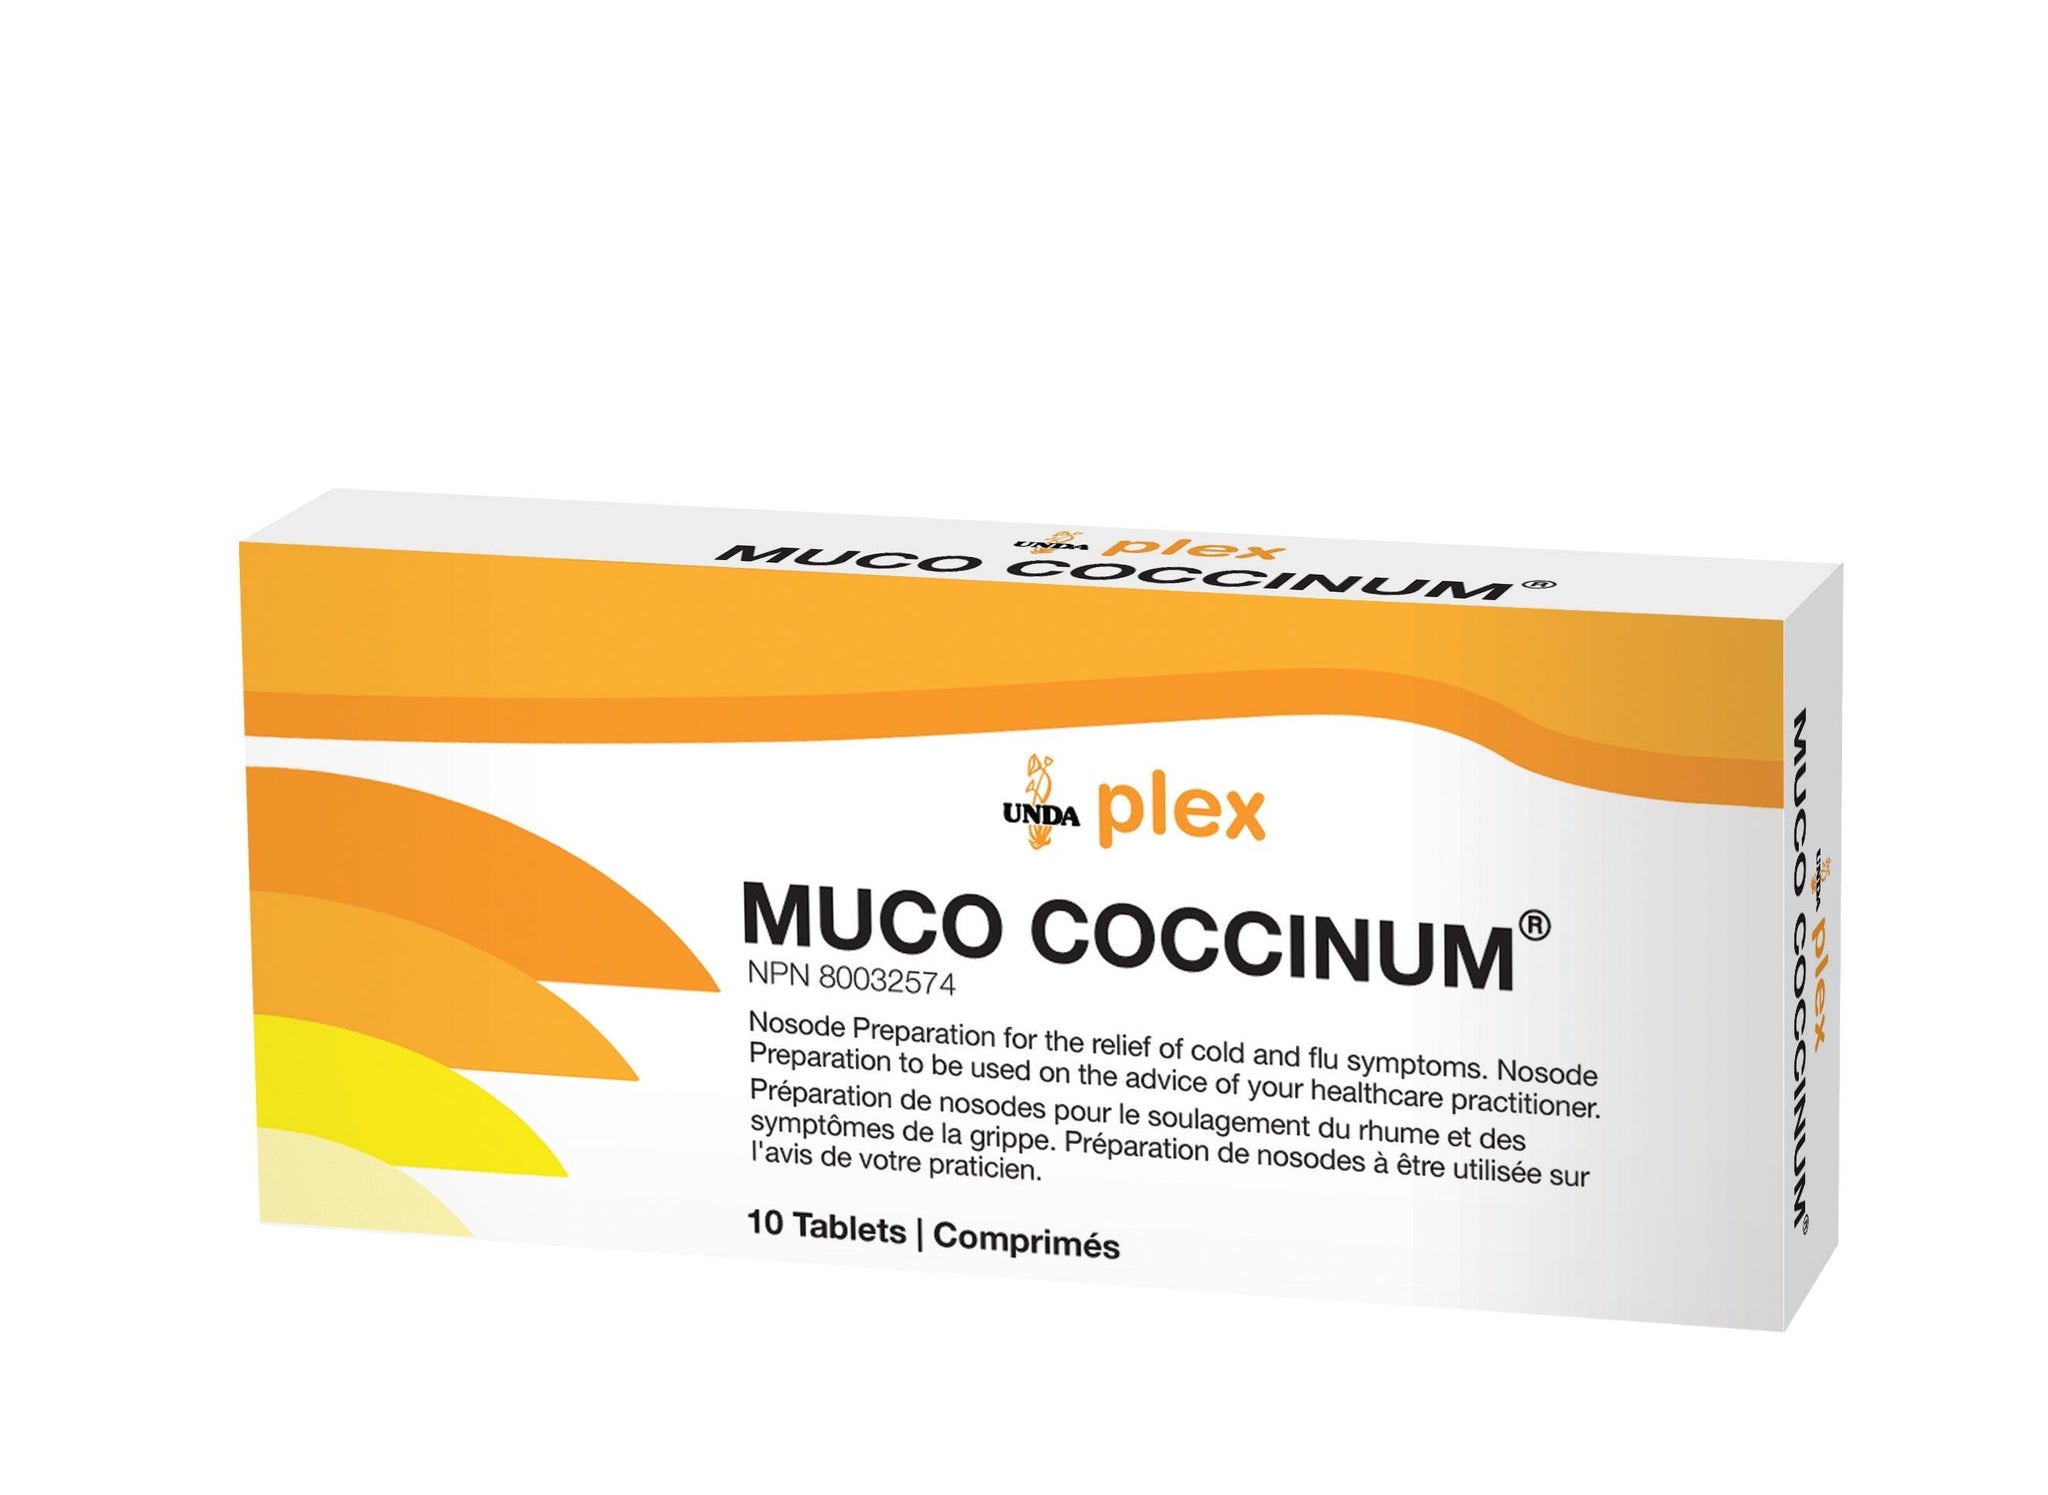 UNDA Muco Coccinum 200 10t